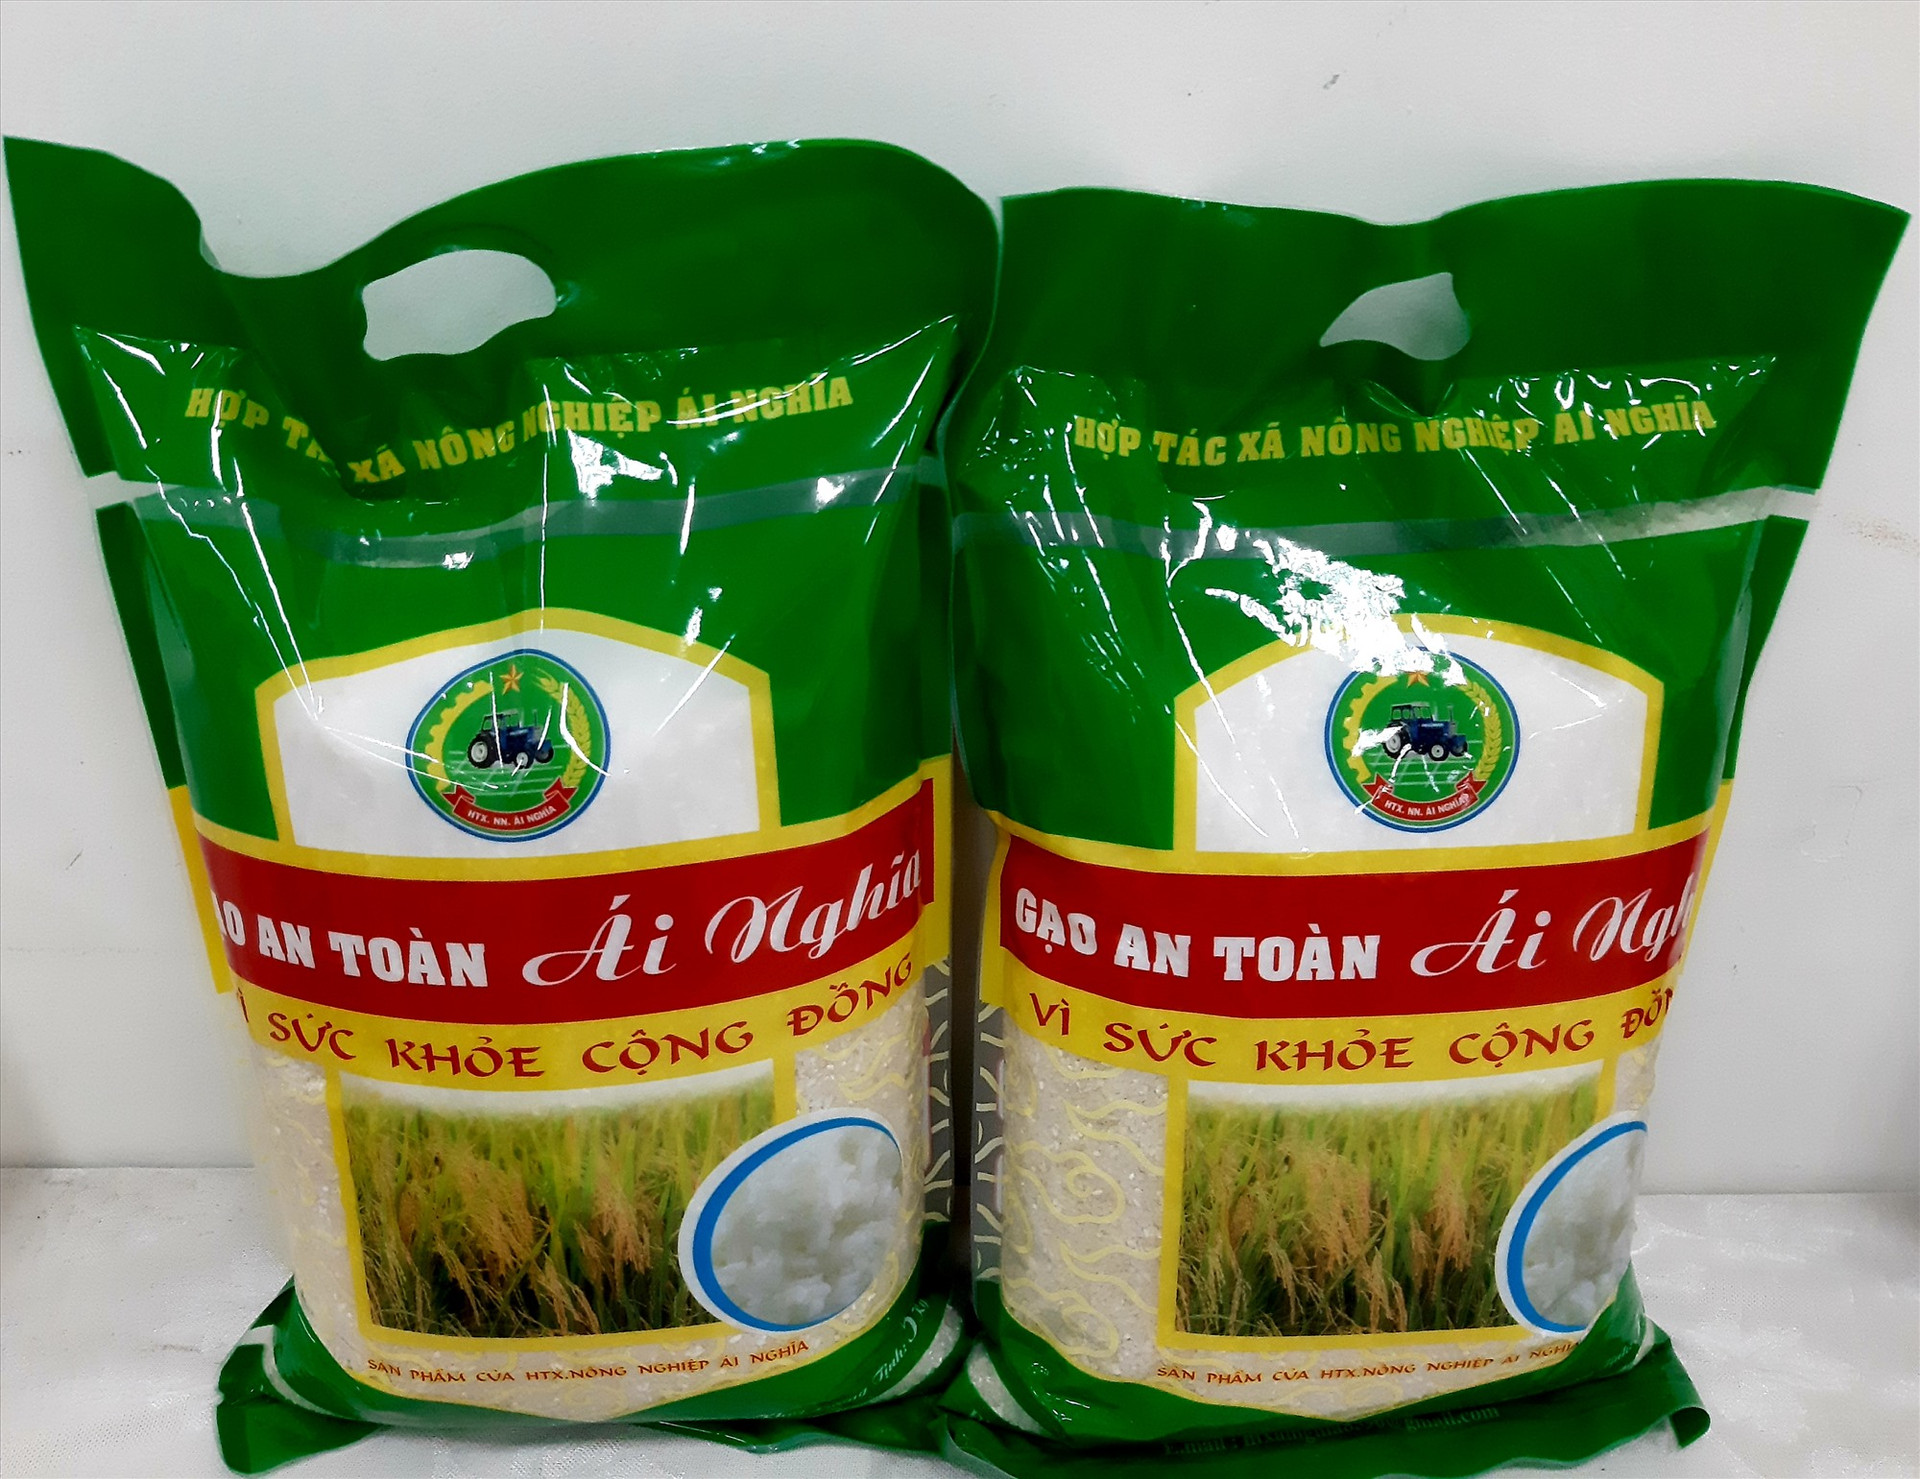 Sản phẩm gạo an toàn Ái Nghĩa rất được người tiêu dùng ưa chuộng. Ảnh: NHÃ PHƯƠNG